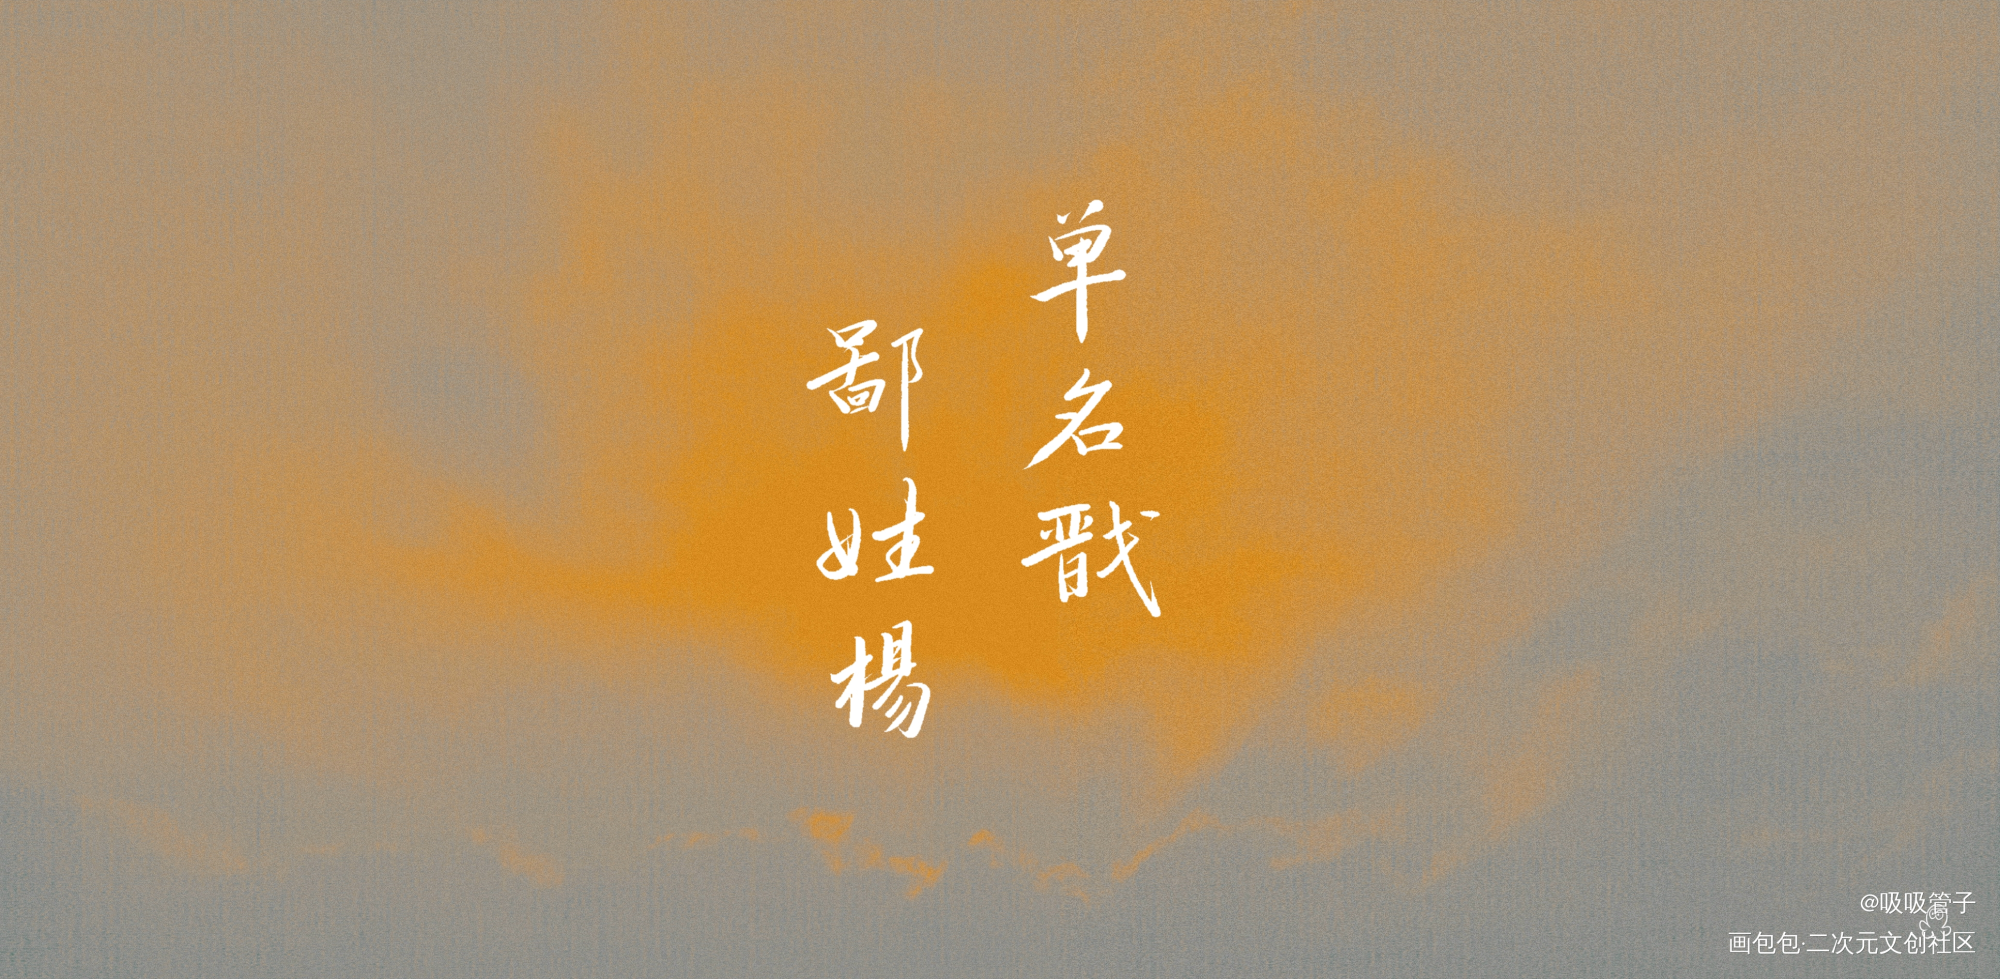 杨戬_新神榜杨戬数位板手写字体设计见字如晤绘画作品